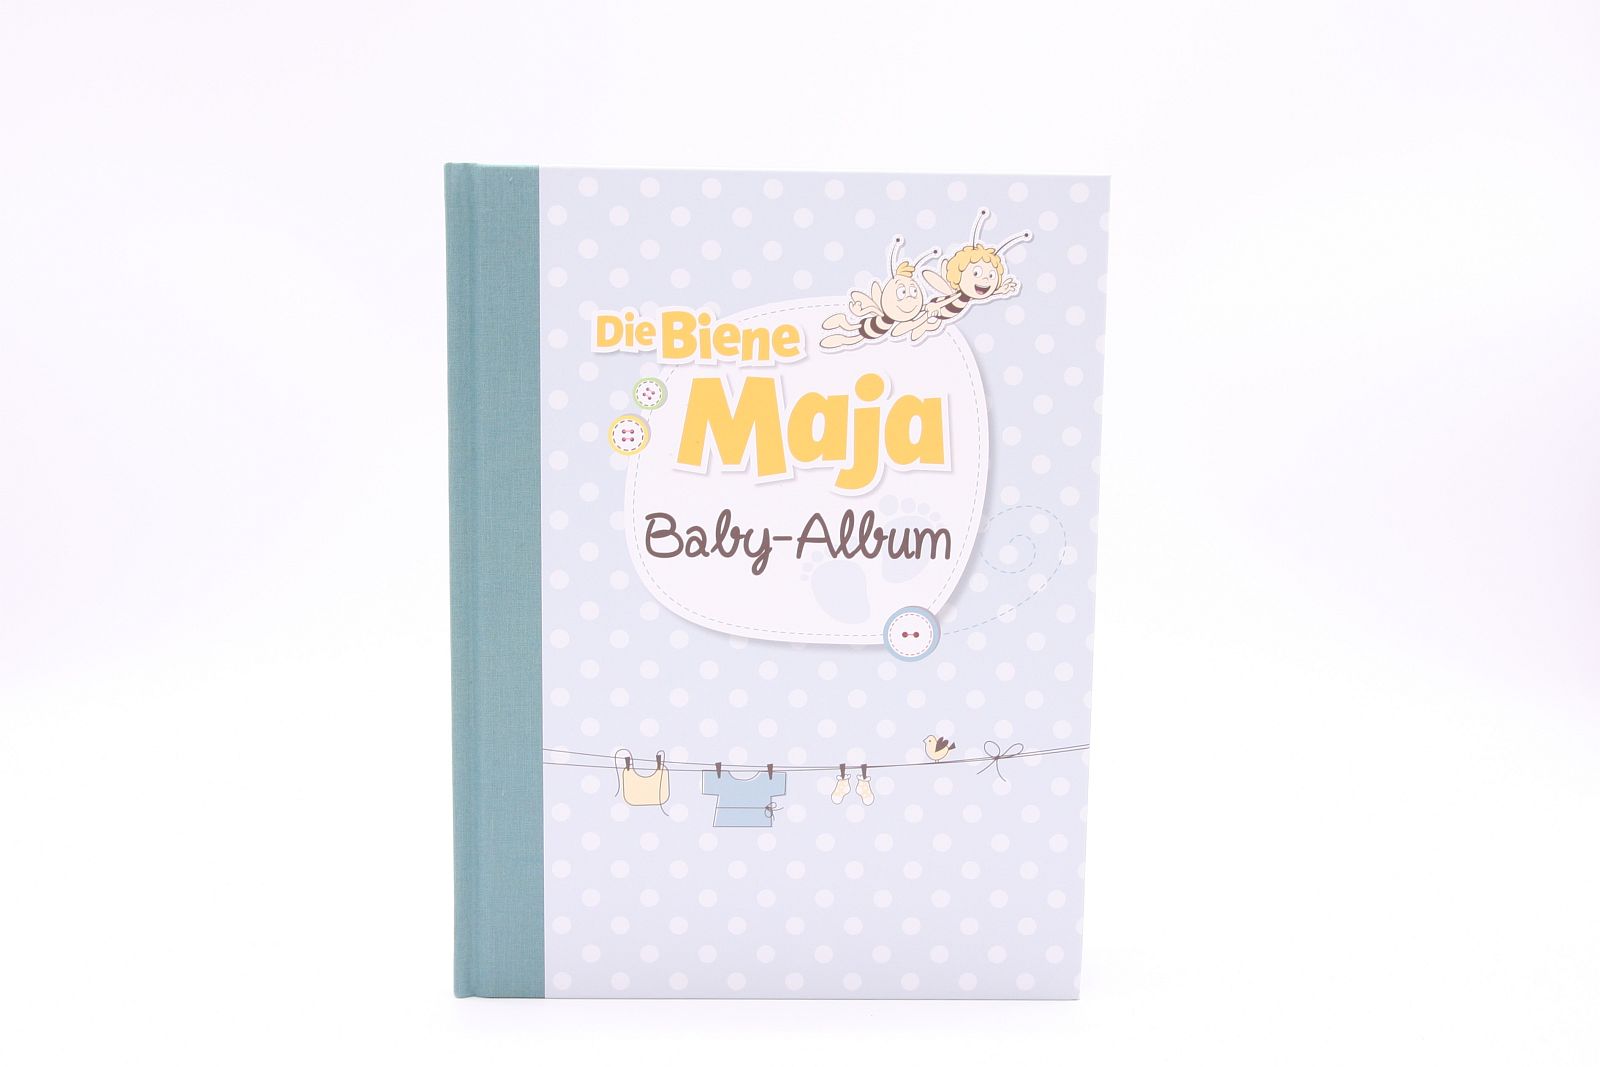 Die Biene Maja "Baby-Album"